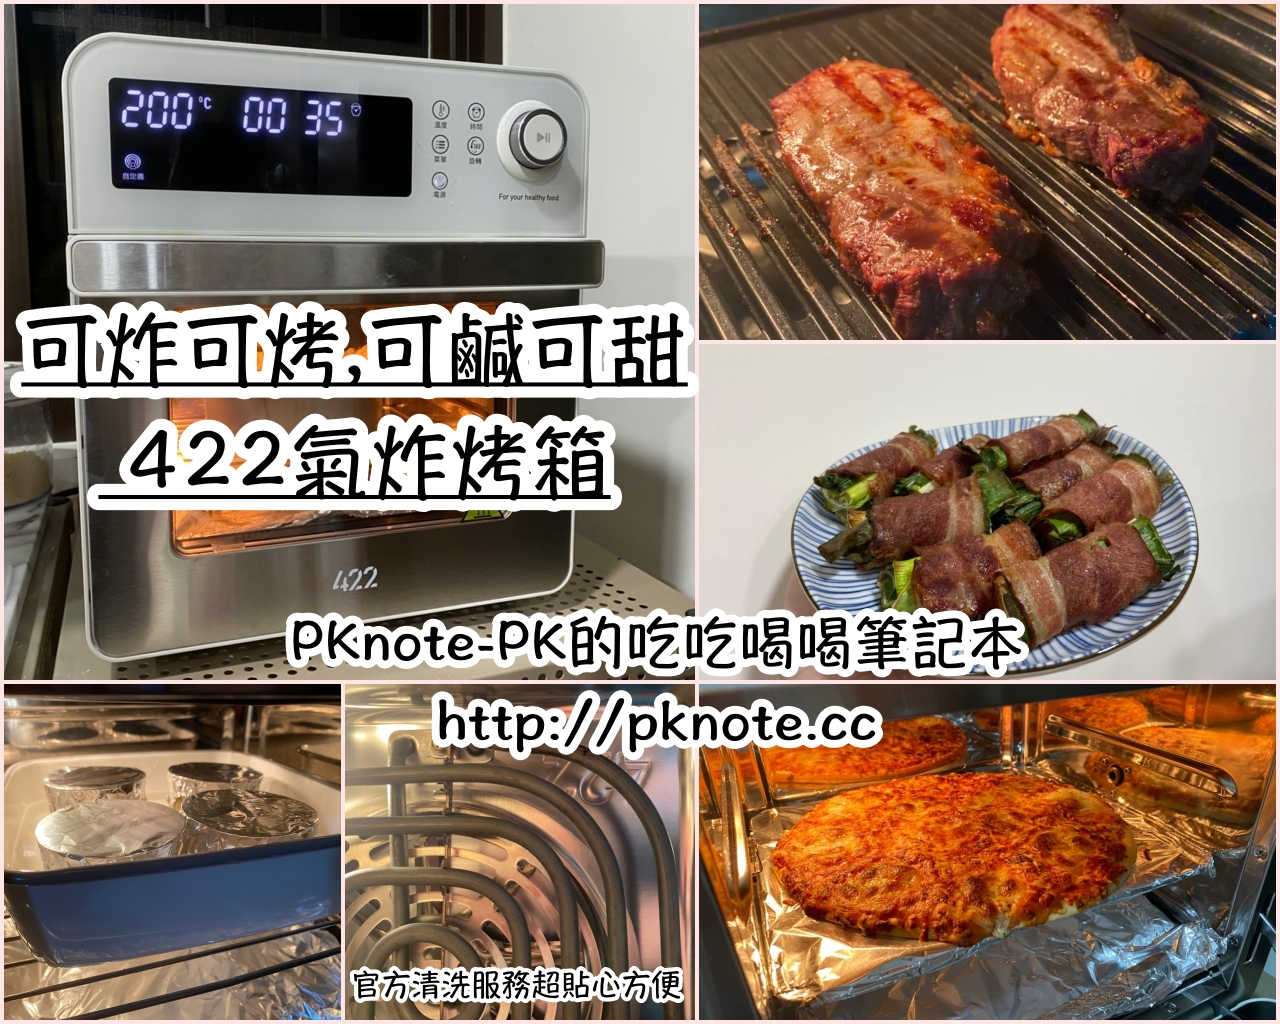 最新推播訊息：PKnote-PK的吃吃喝喝筆記本發佈新文章囉!